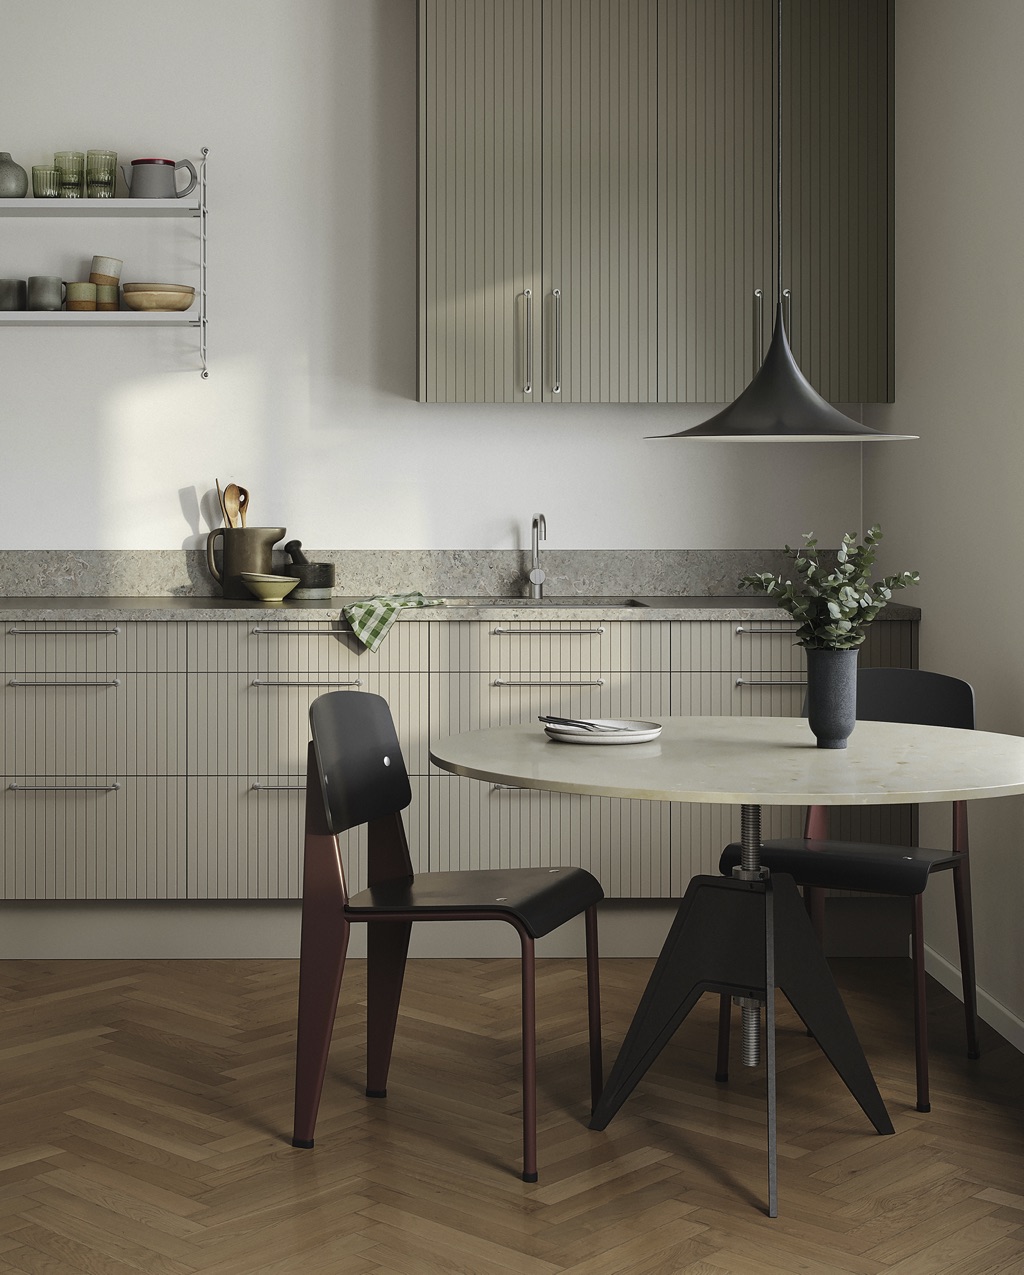 Das Tischbein im groben Industrie-Stil ist absolut außergewöhnlich. Einen tollen Kontrast dazu bildet die helle, minimalistische Steinplatte. Die Küchenmöbel sind von Superfront.